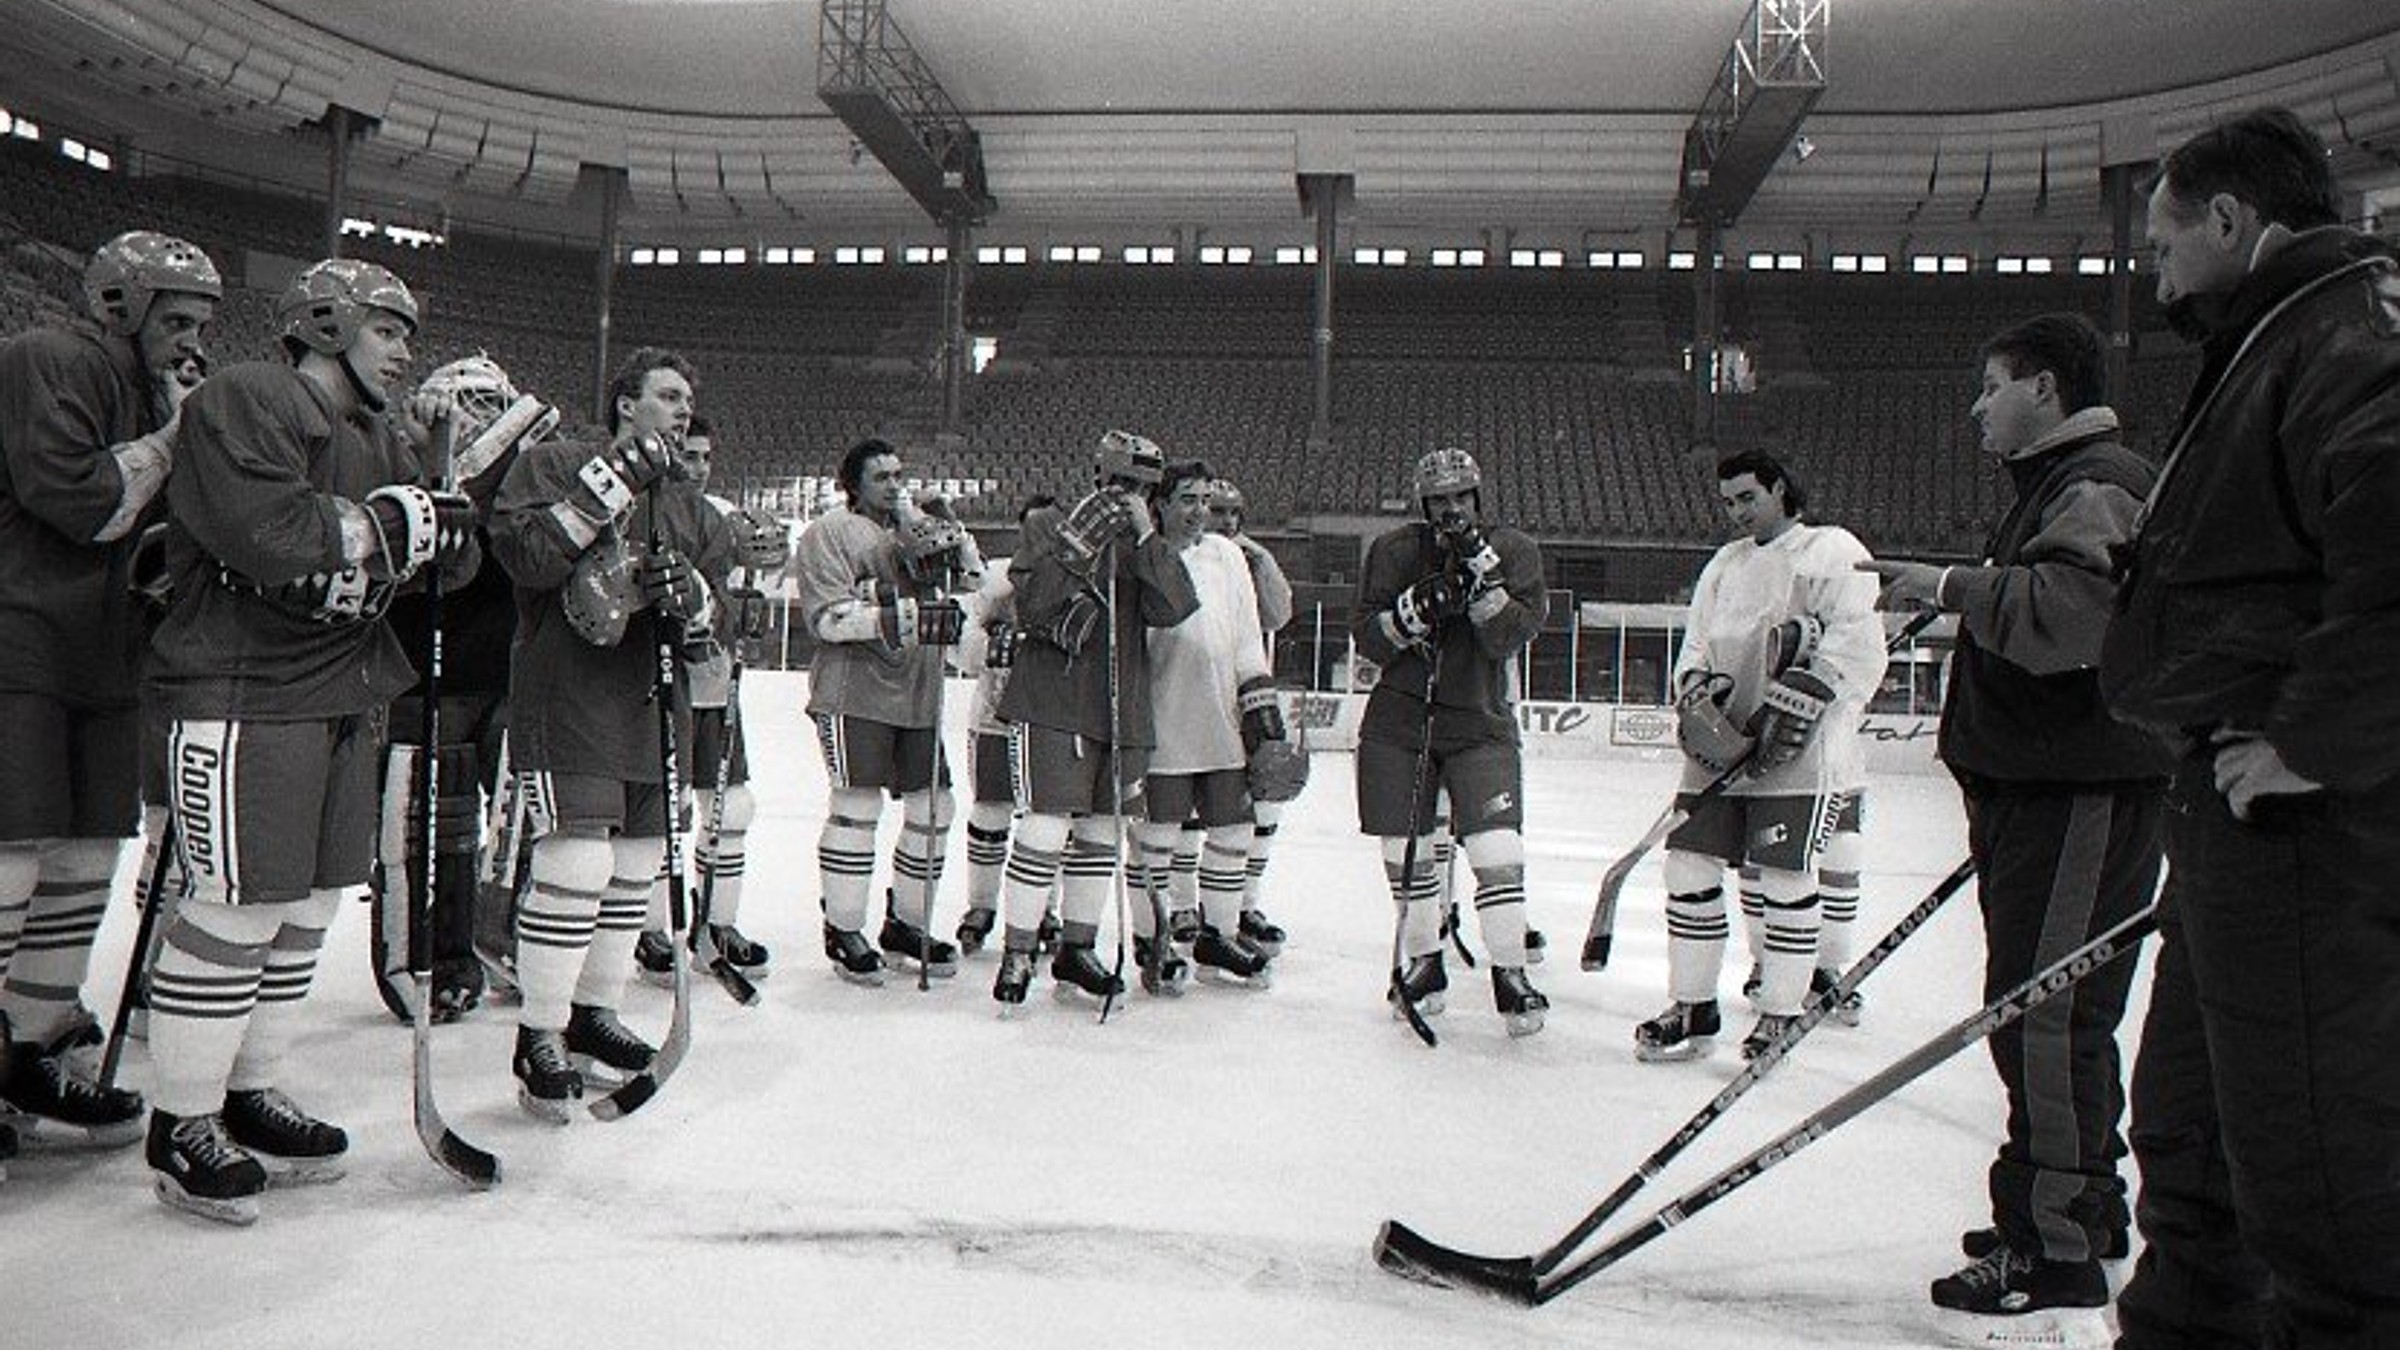 Prvý tréning slovenskej hokejovej reprezentácie vo februári 1993, vpravo tréner Július Šupler s asistentom Dušanom Žiškom.